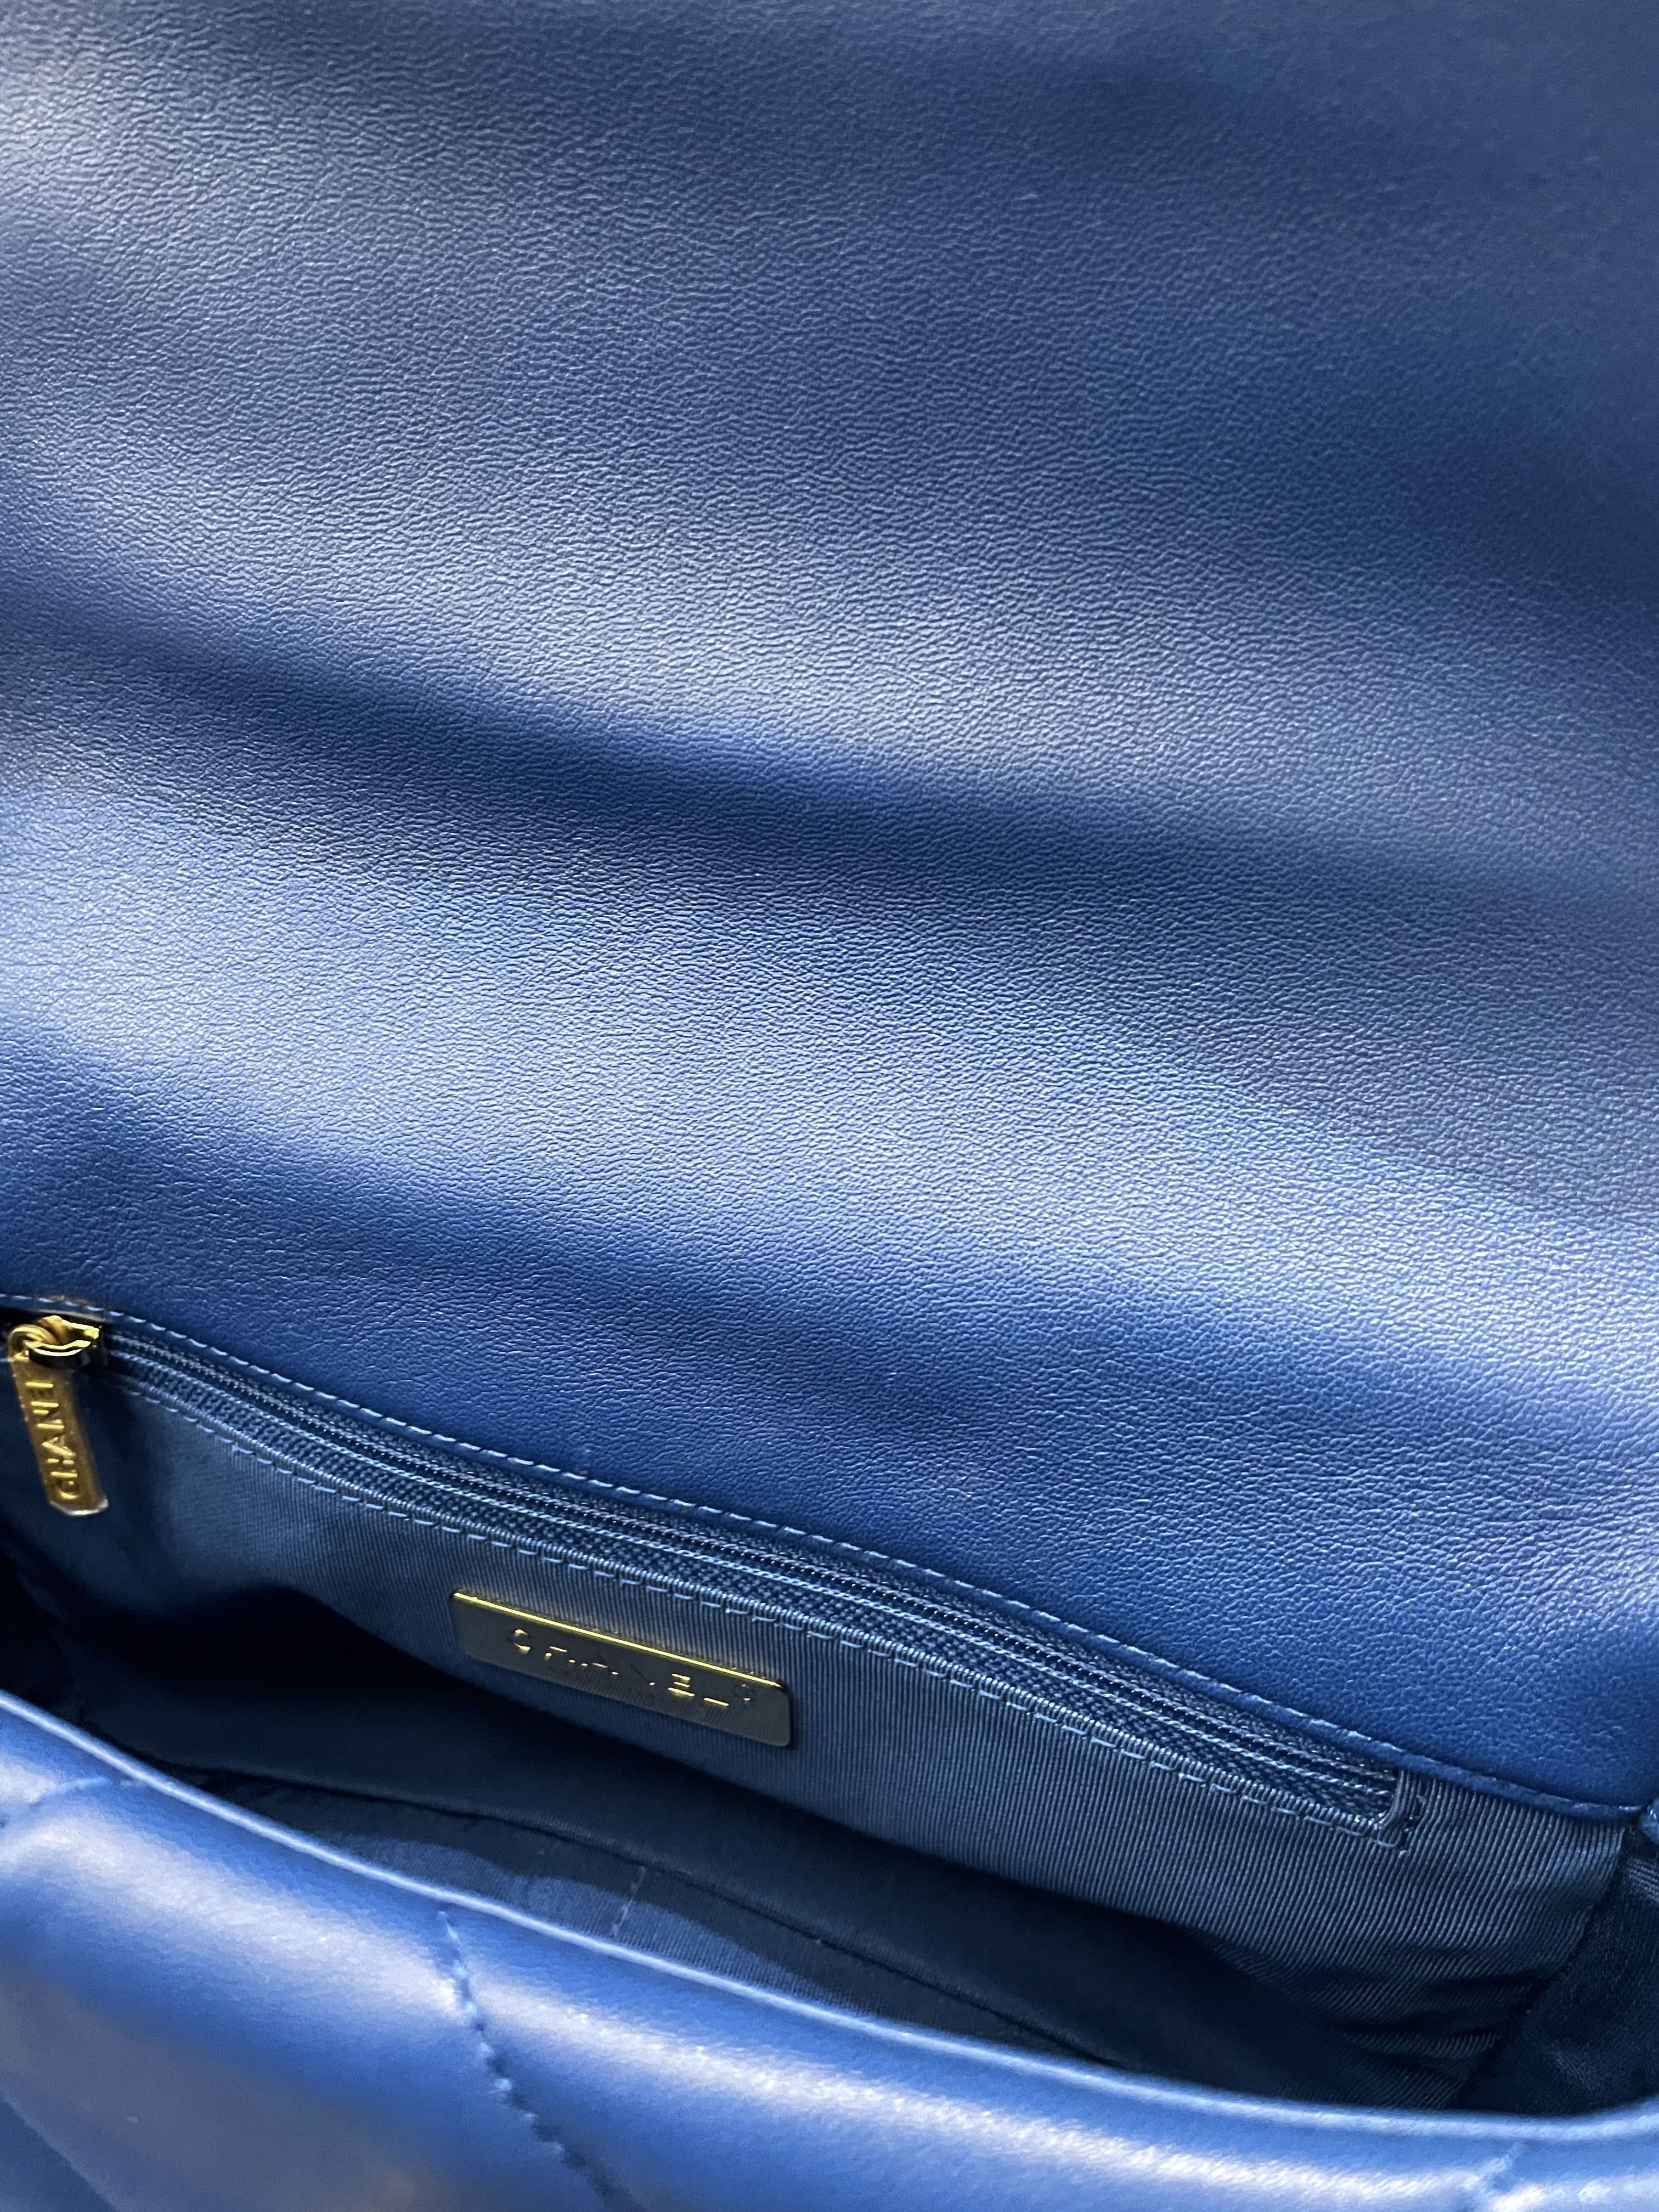 Chanel 19 Flap Bag Cobalt Blue Lambskin